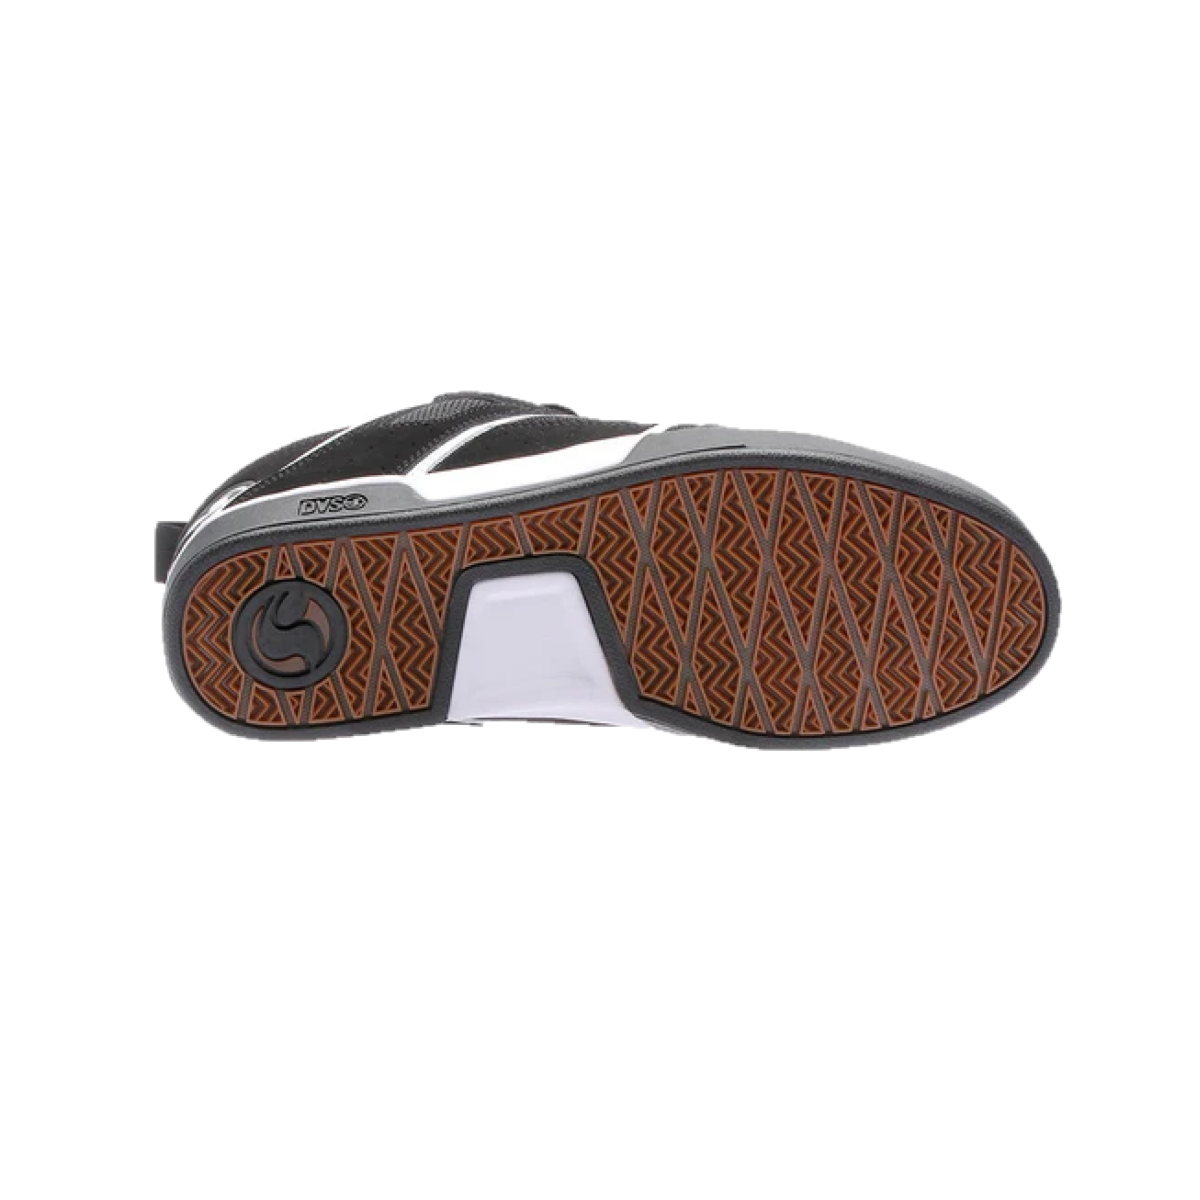 DVS F0000323010 COMANCHE 2.0+ MN'S (Medium) Black/Gum Leather Skate Shoes